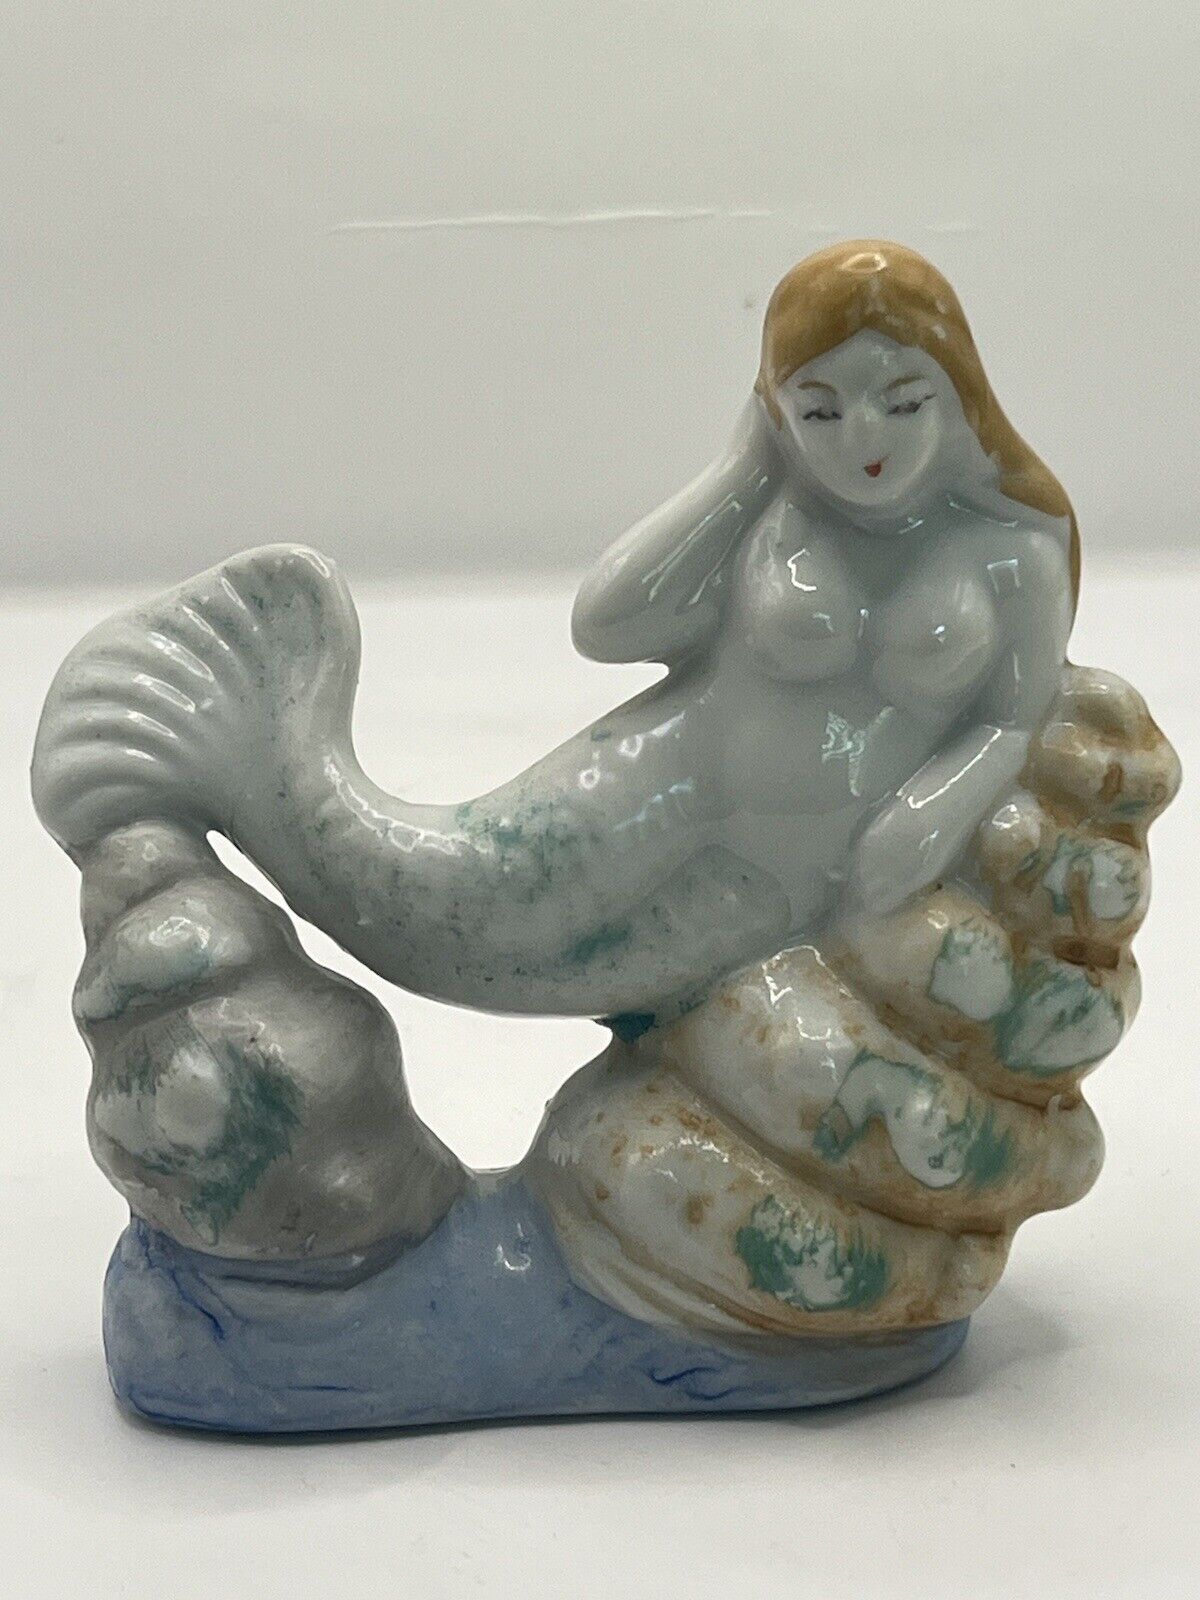 VTG Mermaid Figurine Stamped Japan